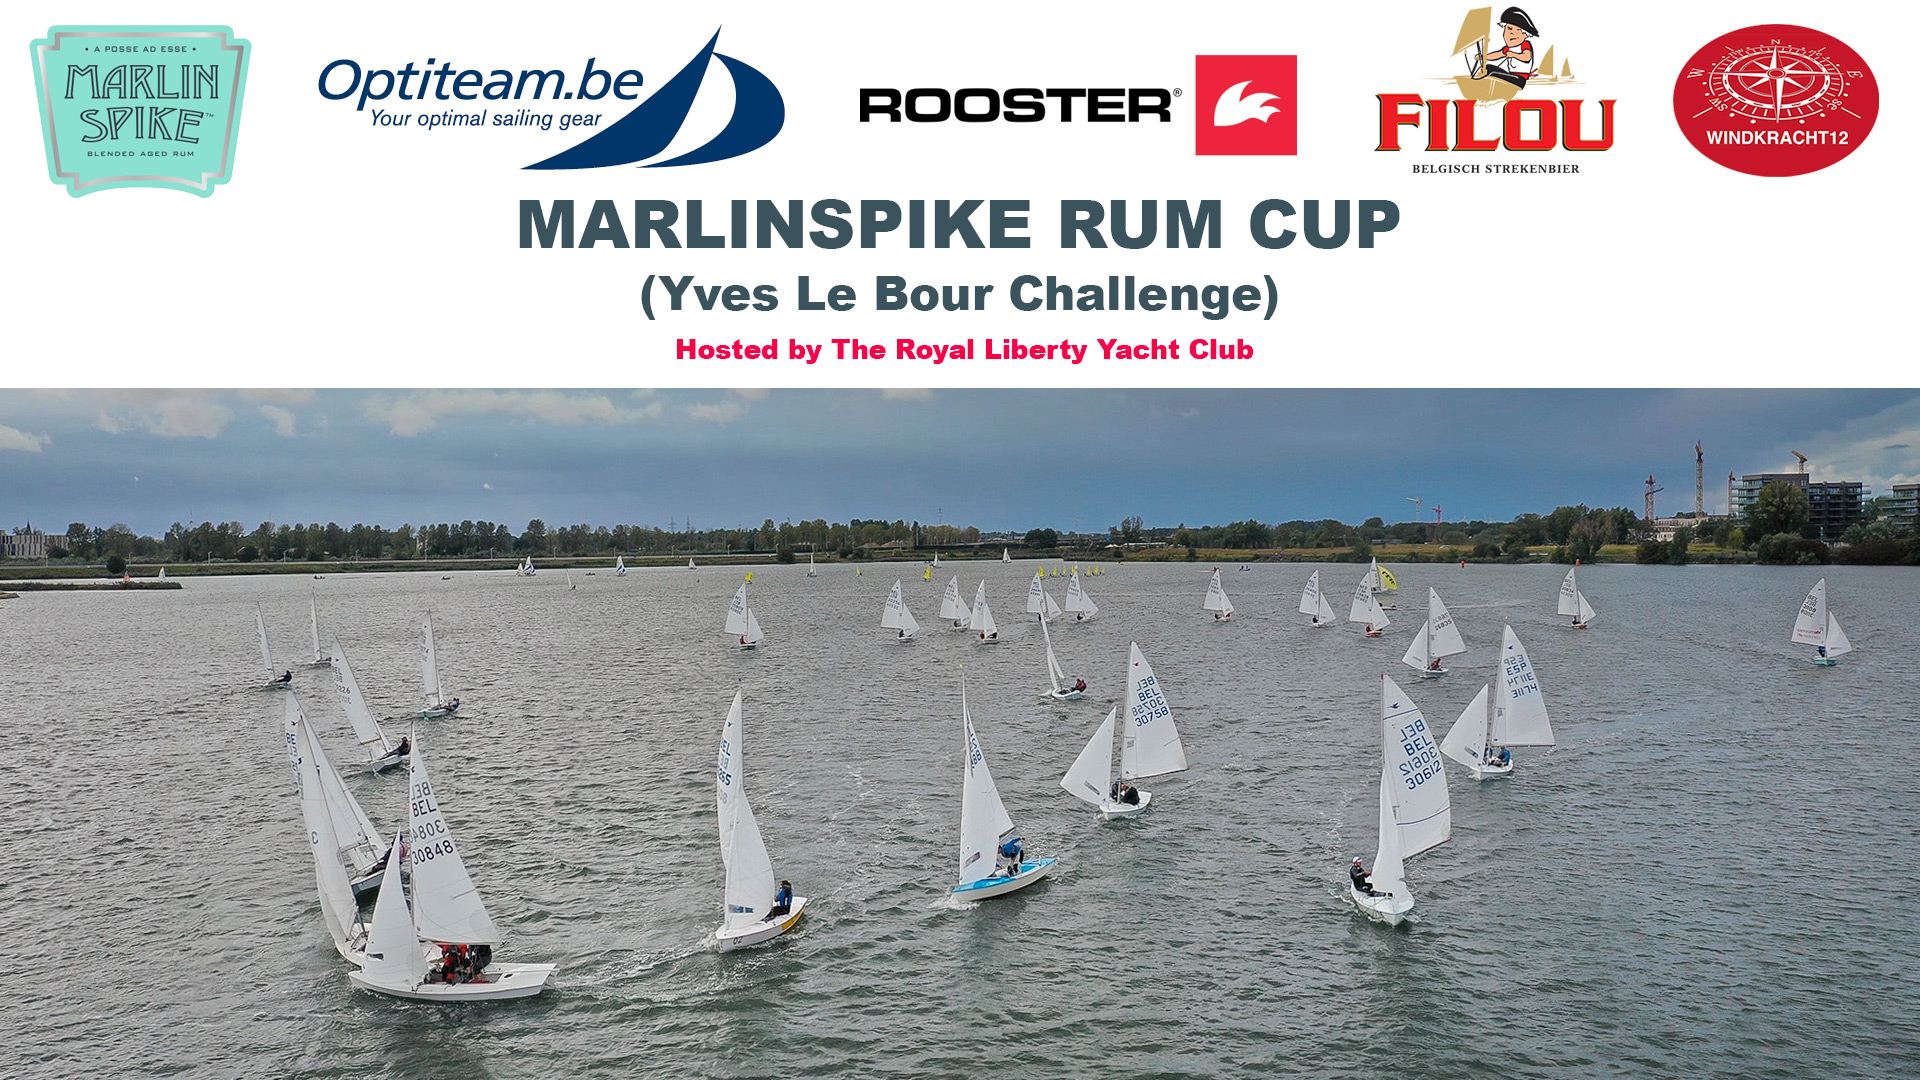 MarlinSpike Rum Cup Image